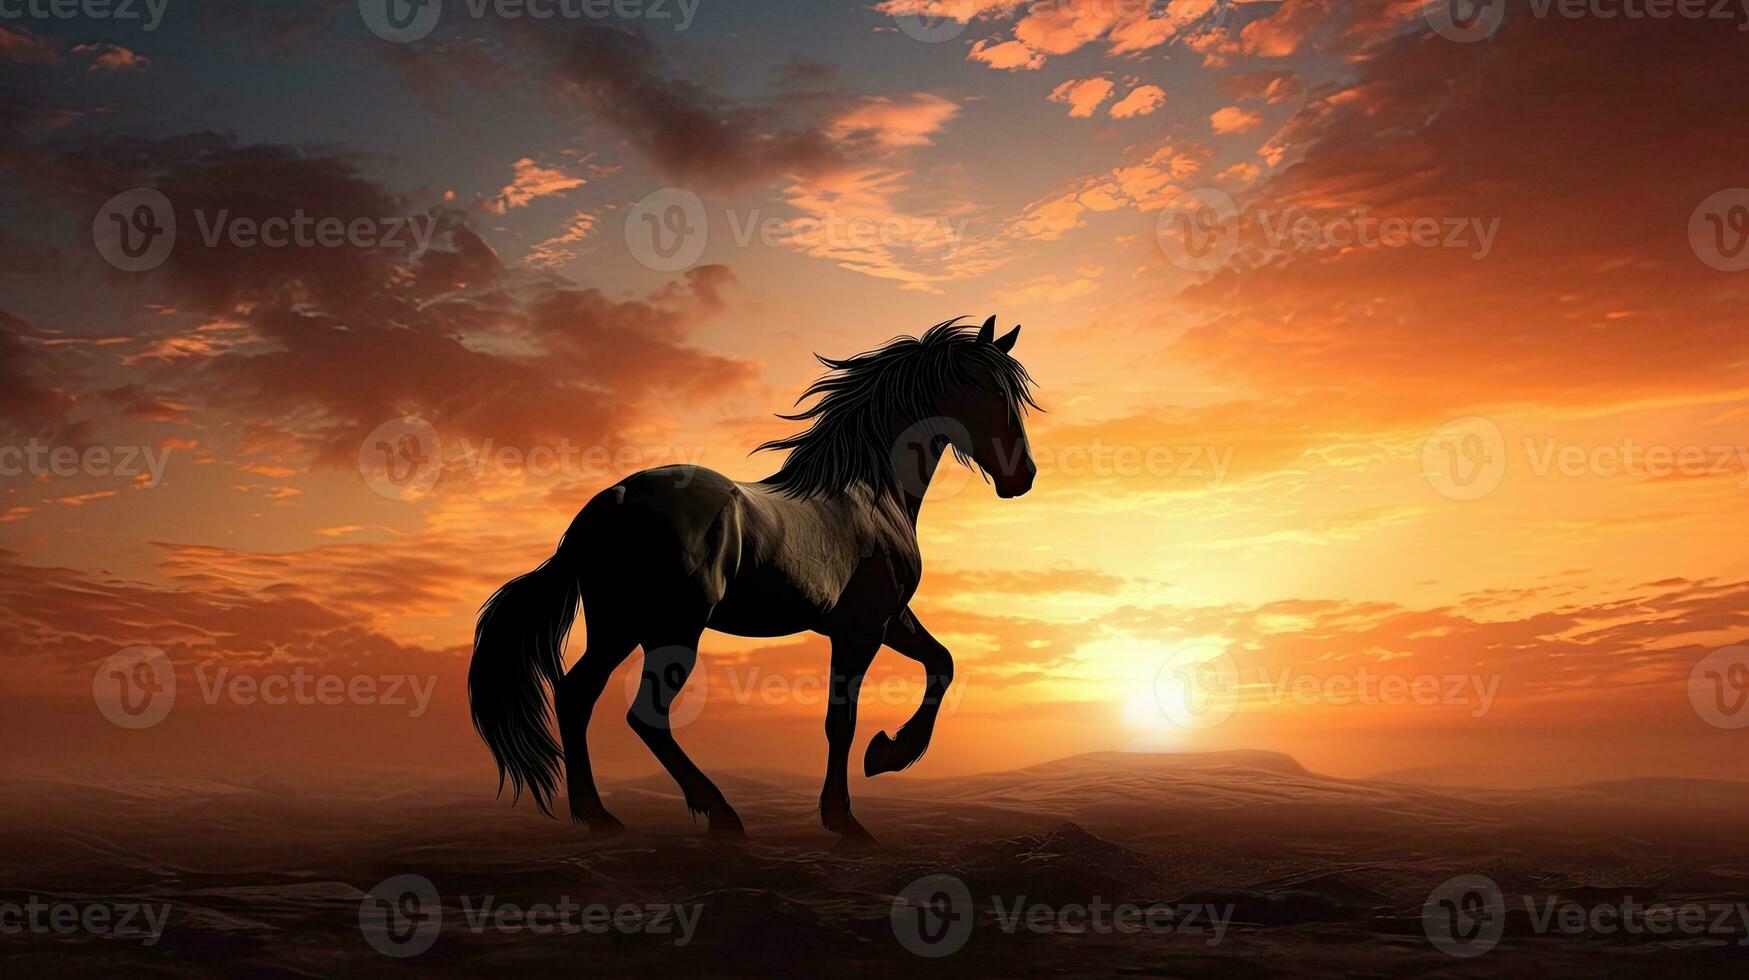 recortado cavalo contra uma nascer do sol pano de fundo foto